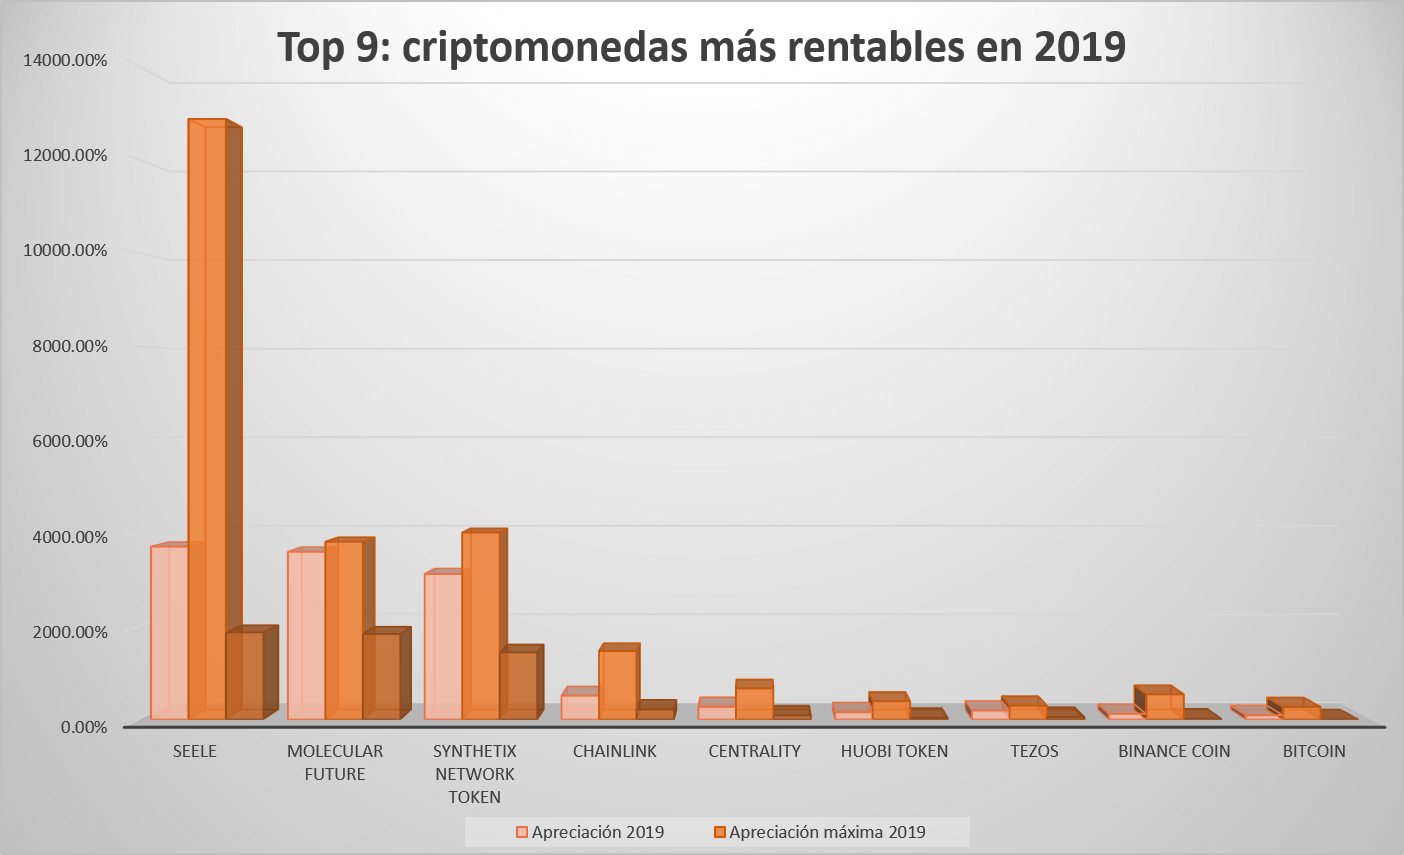 Top 9 criptomonedas más rentables en 2019